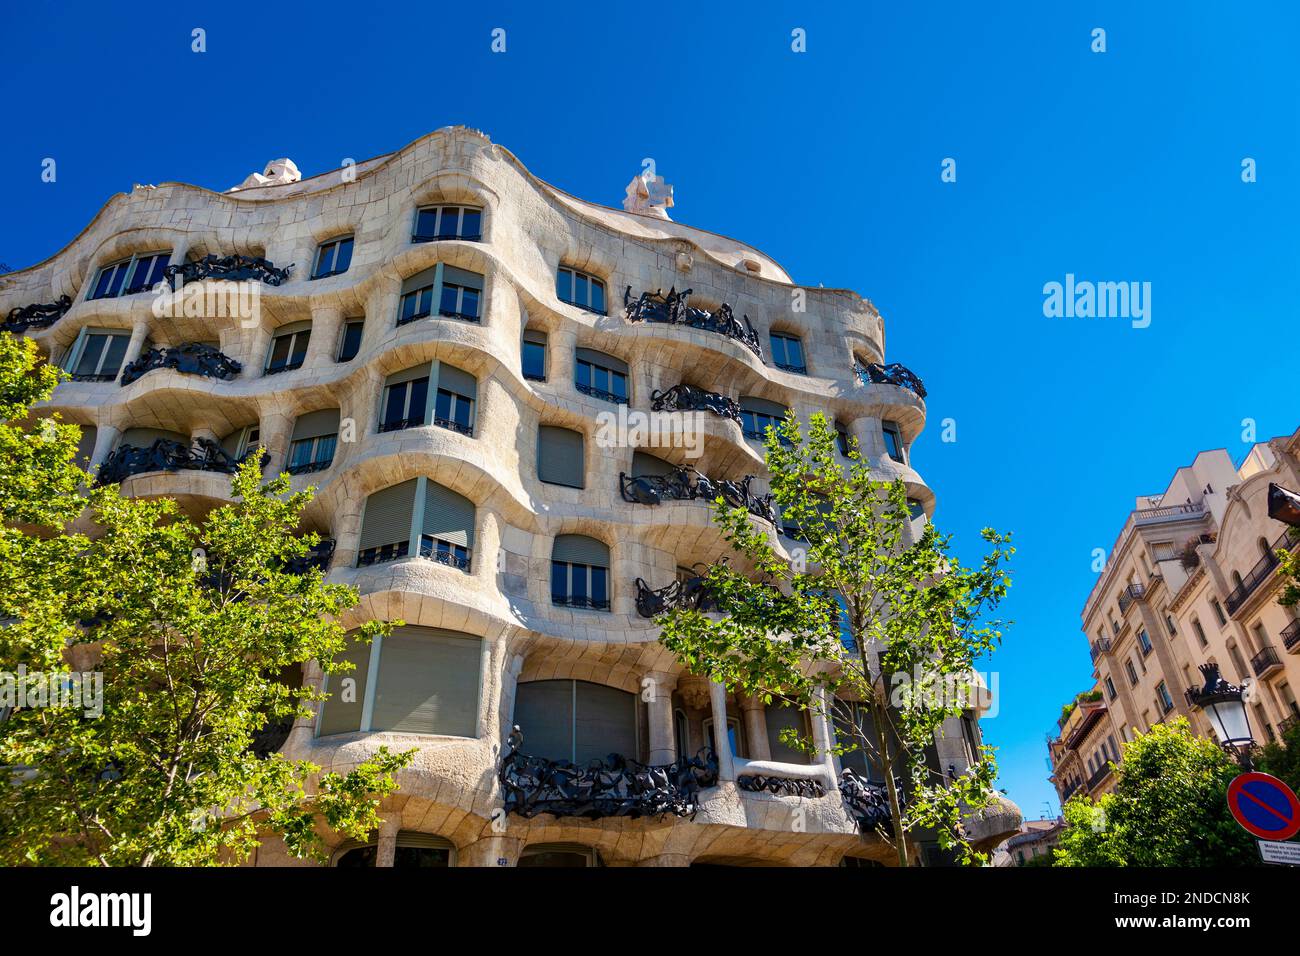 Casa Mila facade, Gaudi architecture in Barcelona, Catalonia, Spain Stock Photo